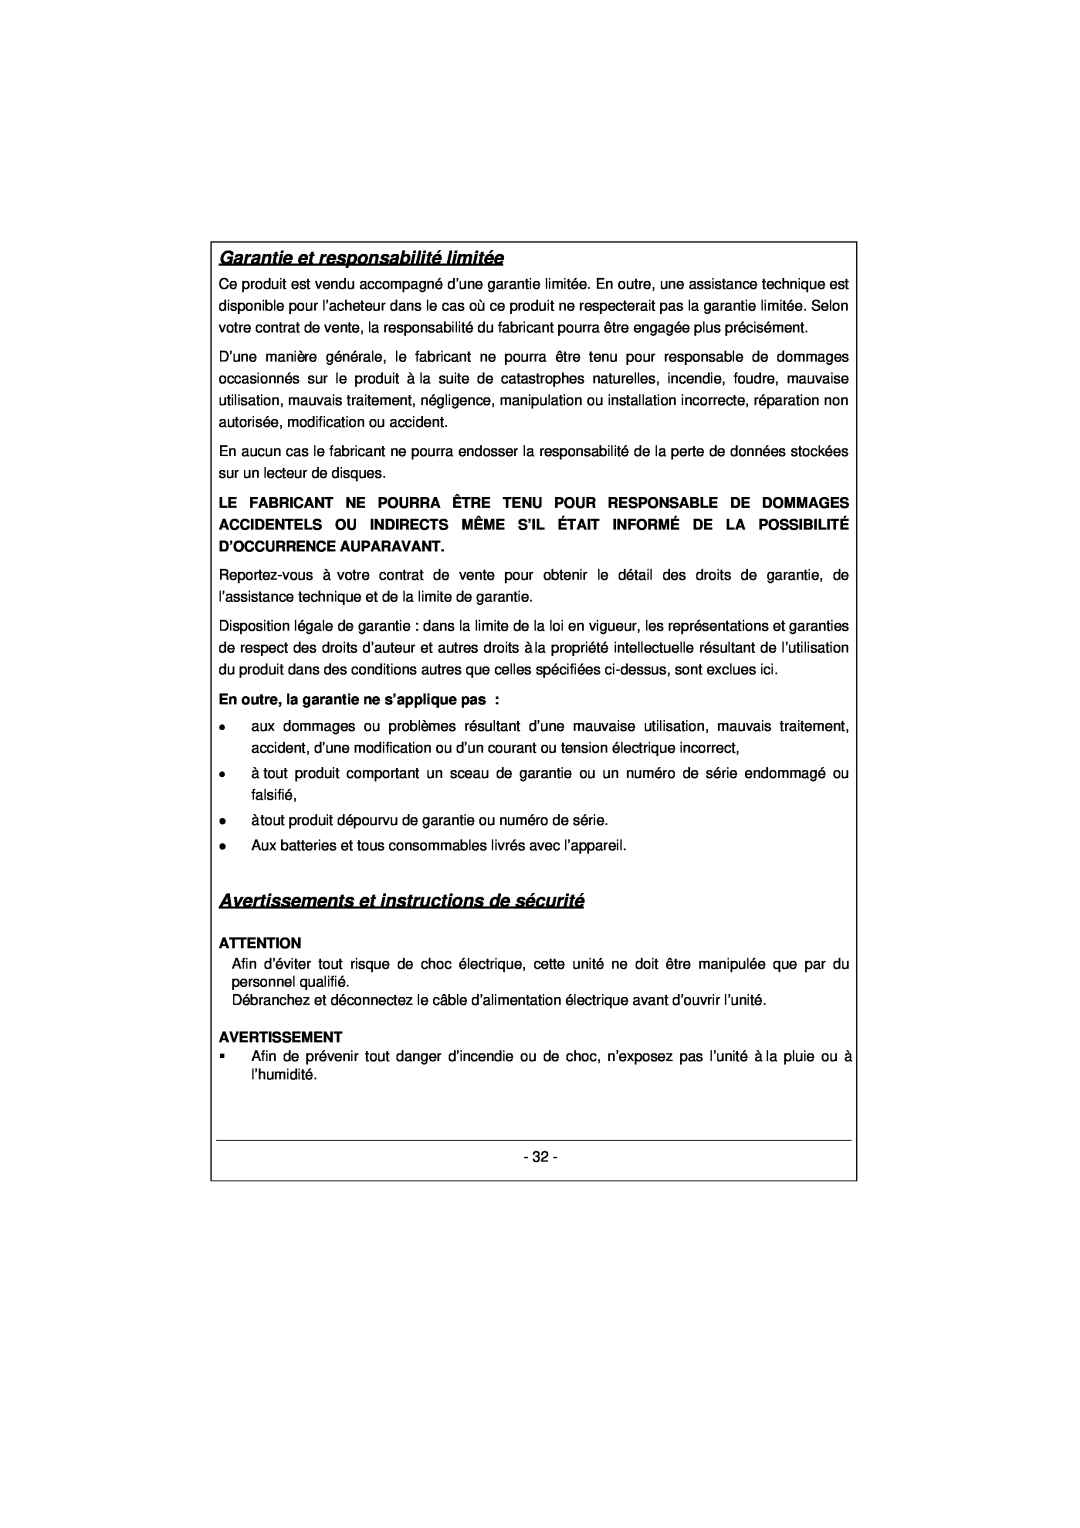 Archos 100628 manual Garantie et responsabilité limitée, Avertissements et instructions de sécurité 